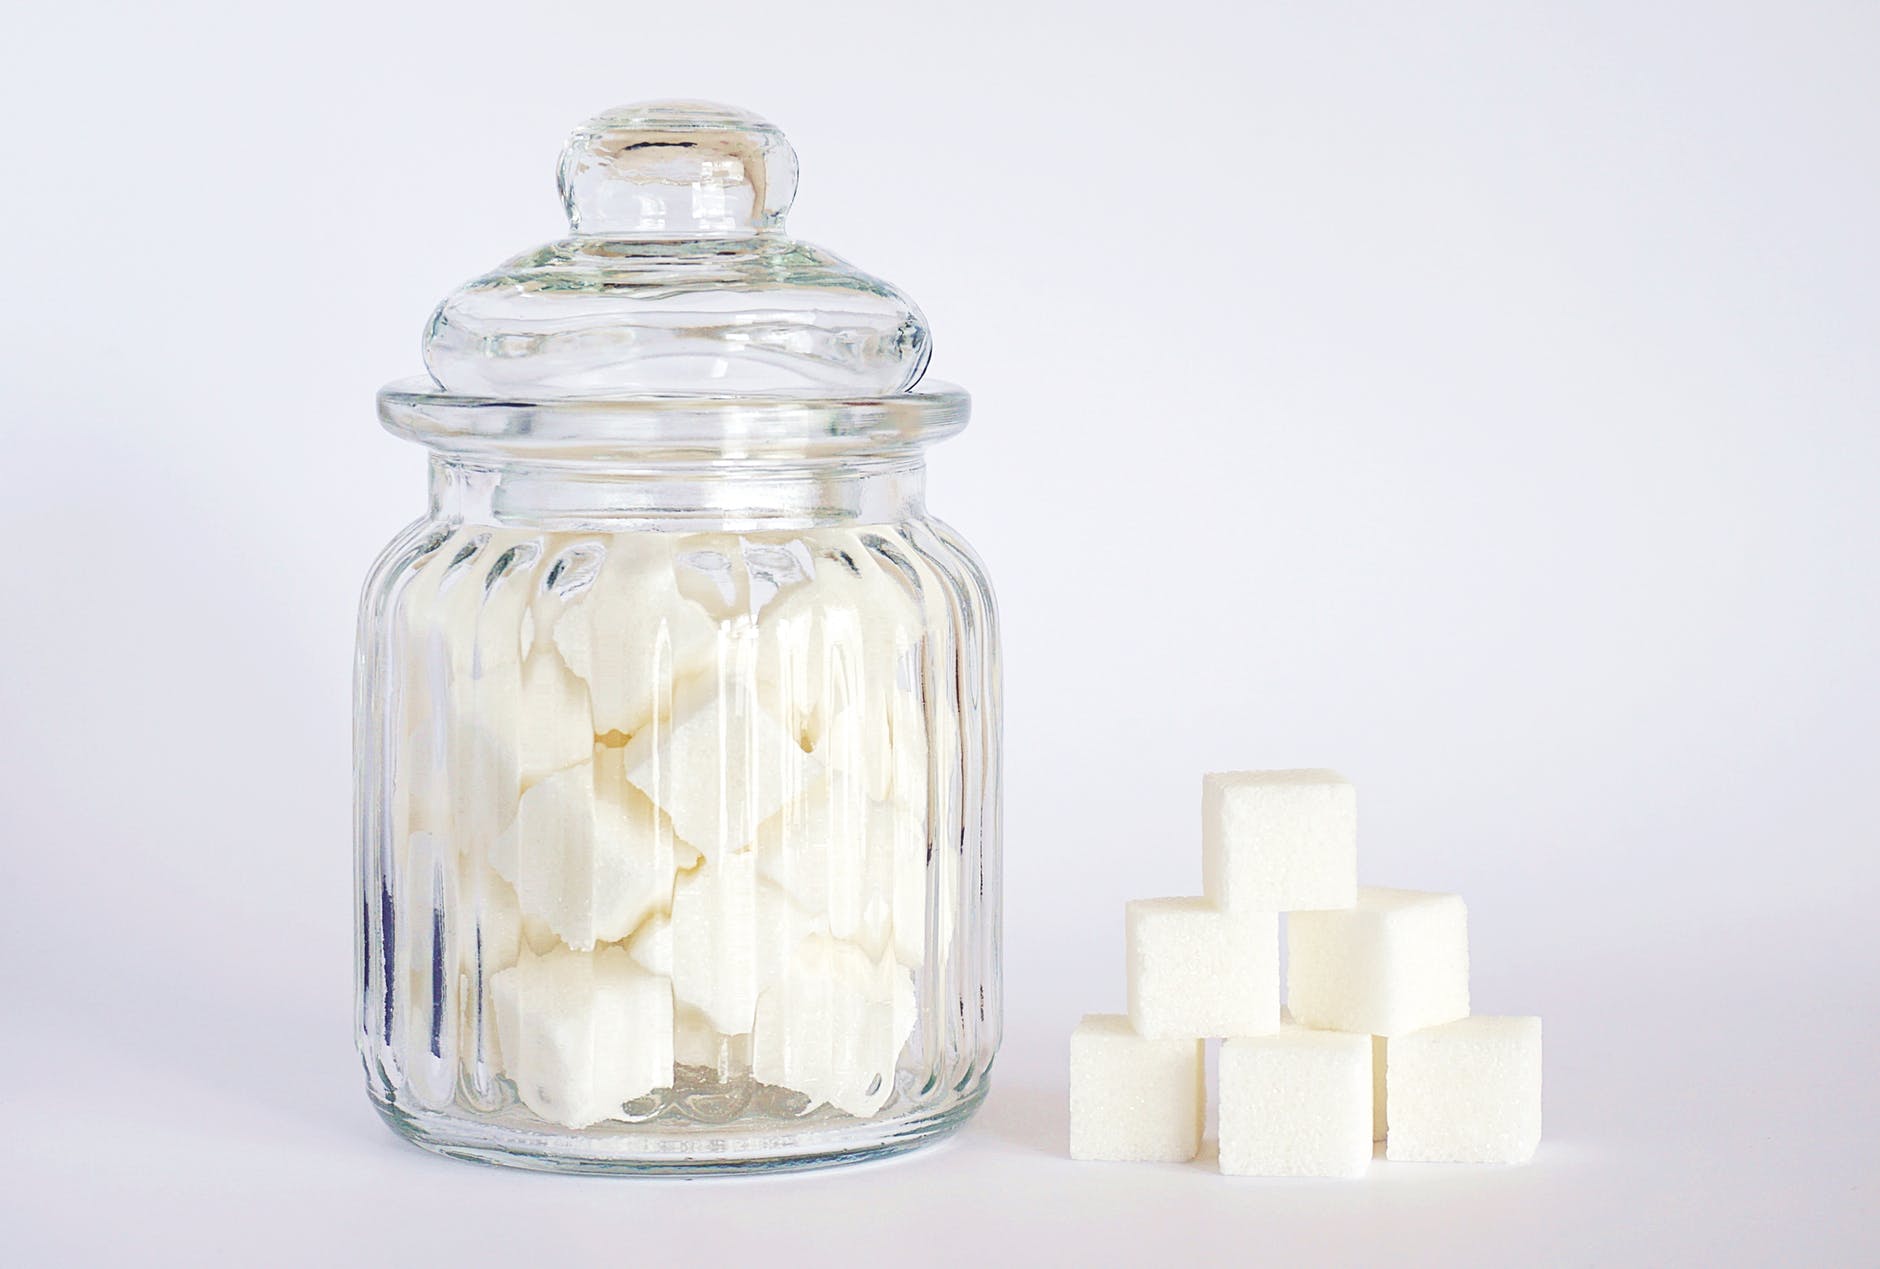 MEIC investiga solicitud para fijar medida de salvaguarda a importaciones de azúcar